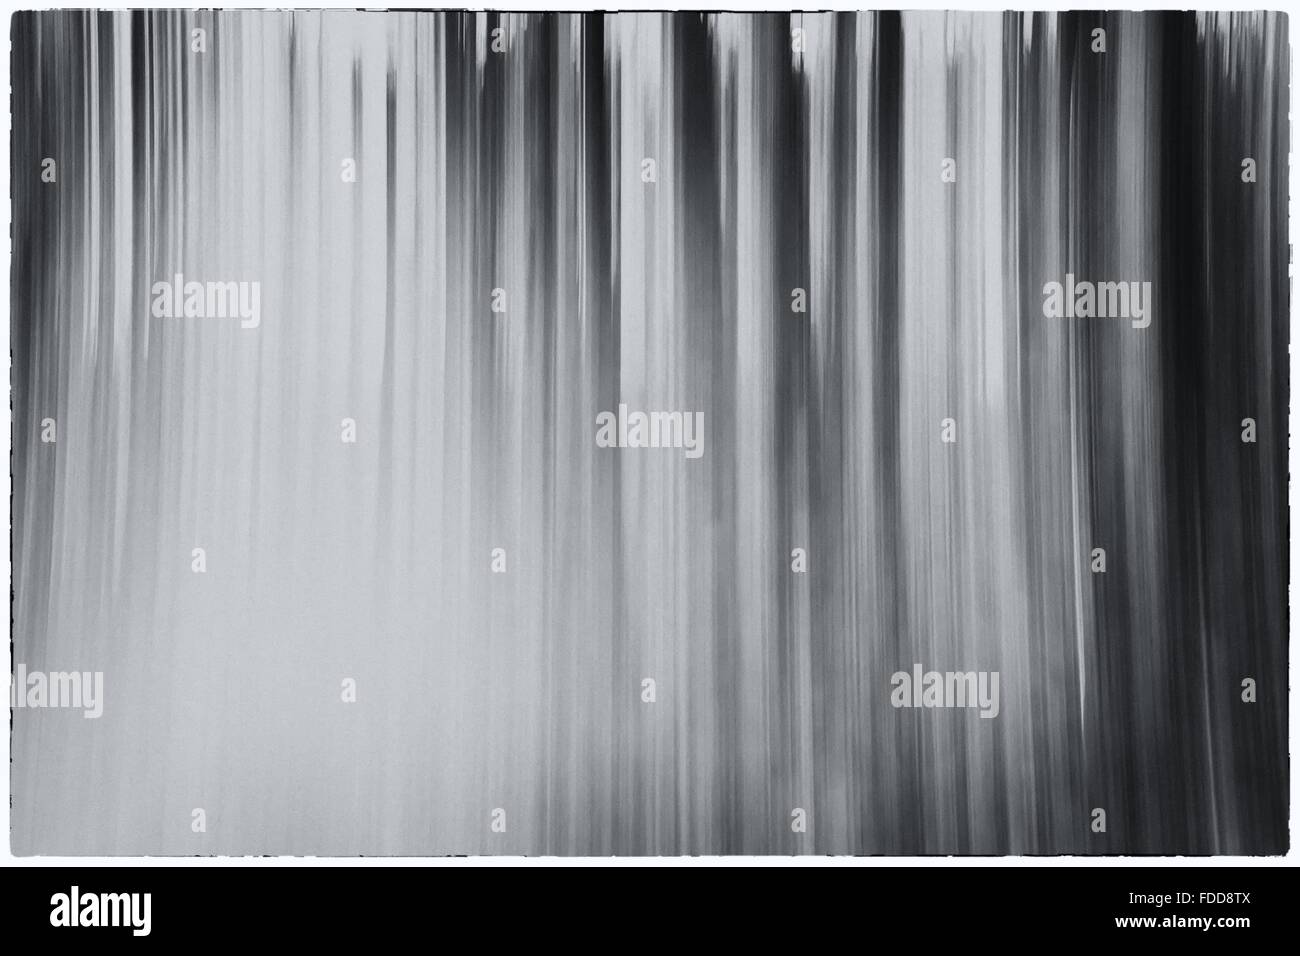 Una foto en blanco y negro conceptual utilizando una velocidad de obturación lenta de árboles en un bosque mostrando hojas con un contraste filtro vintage Foto de stock